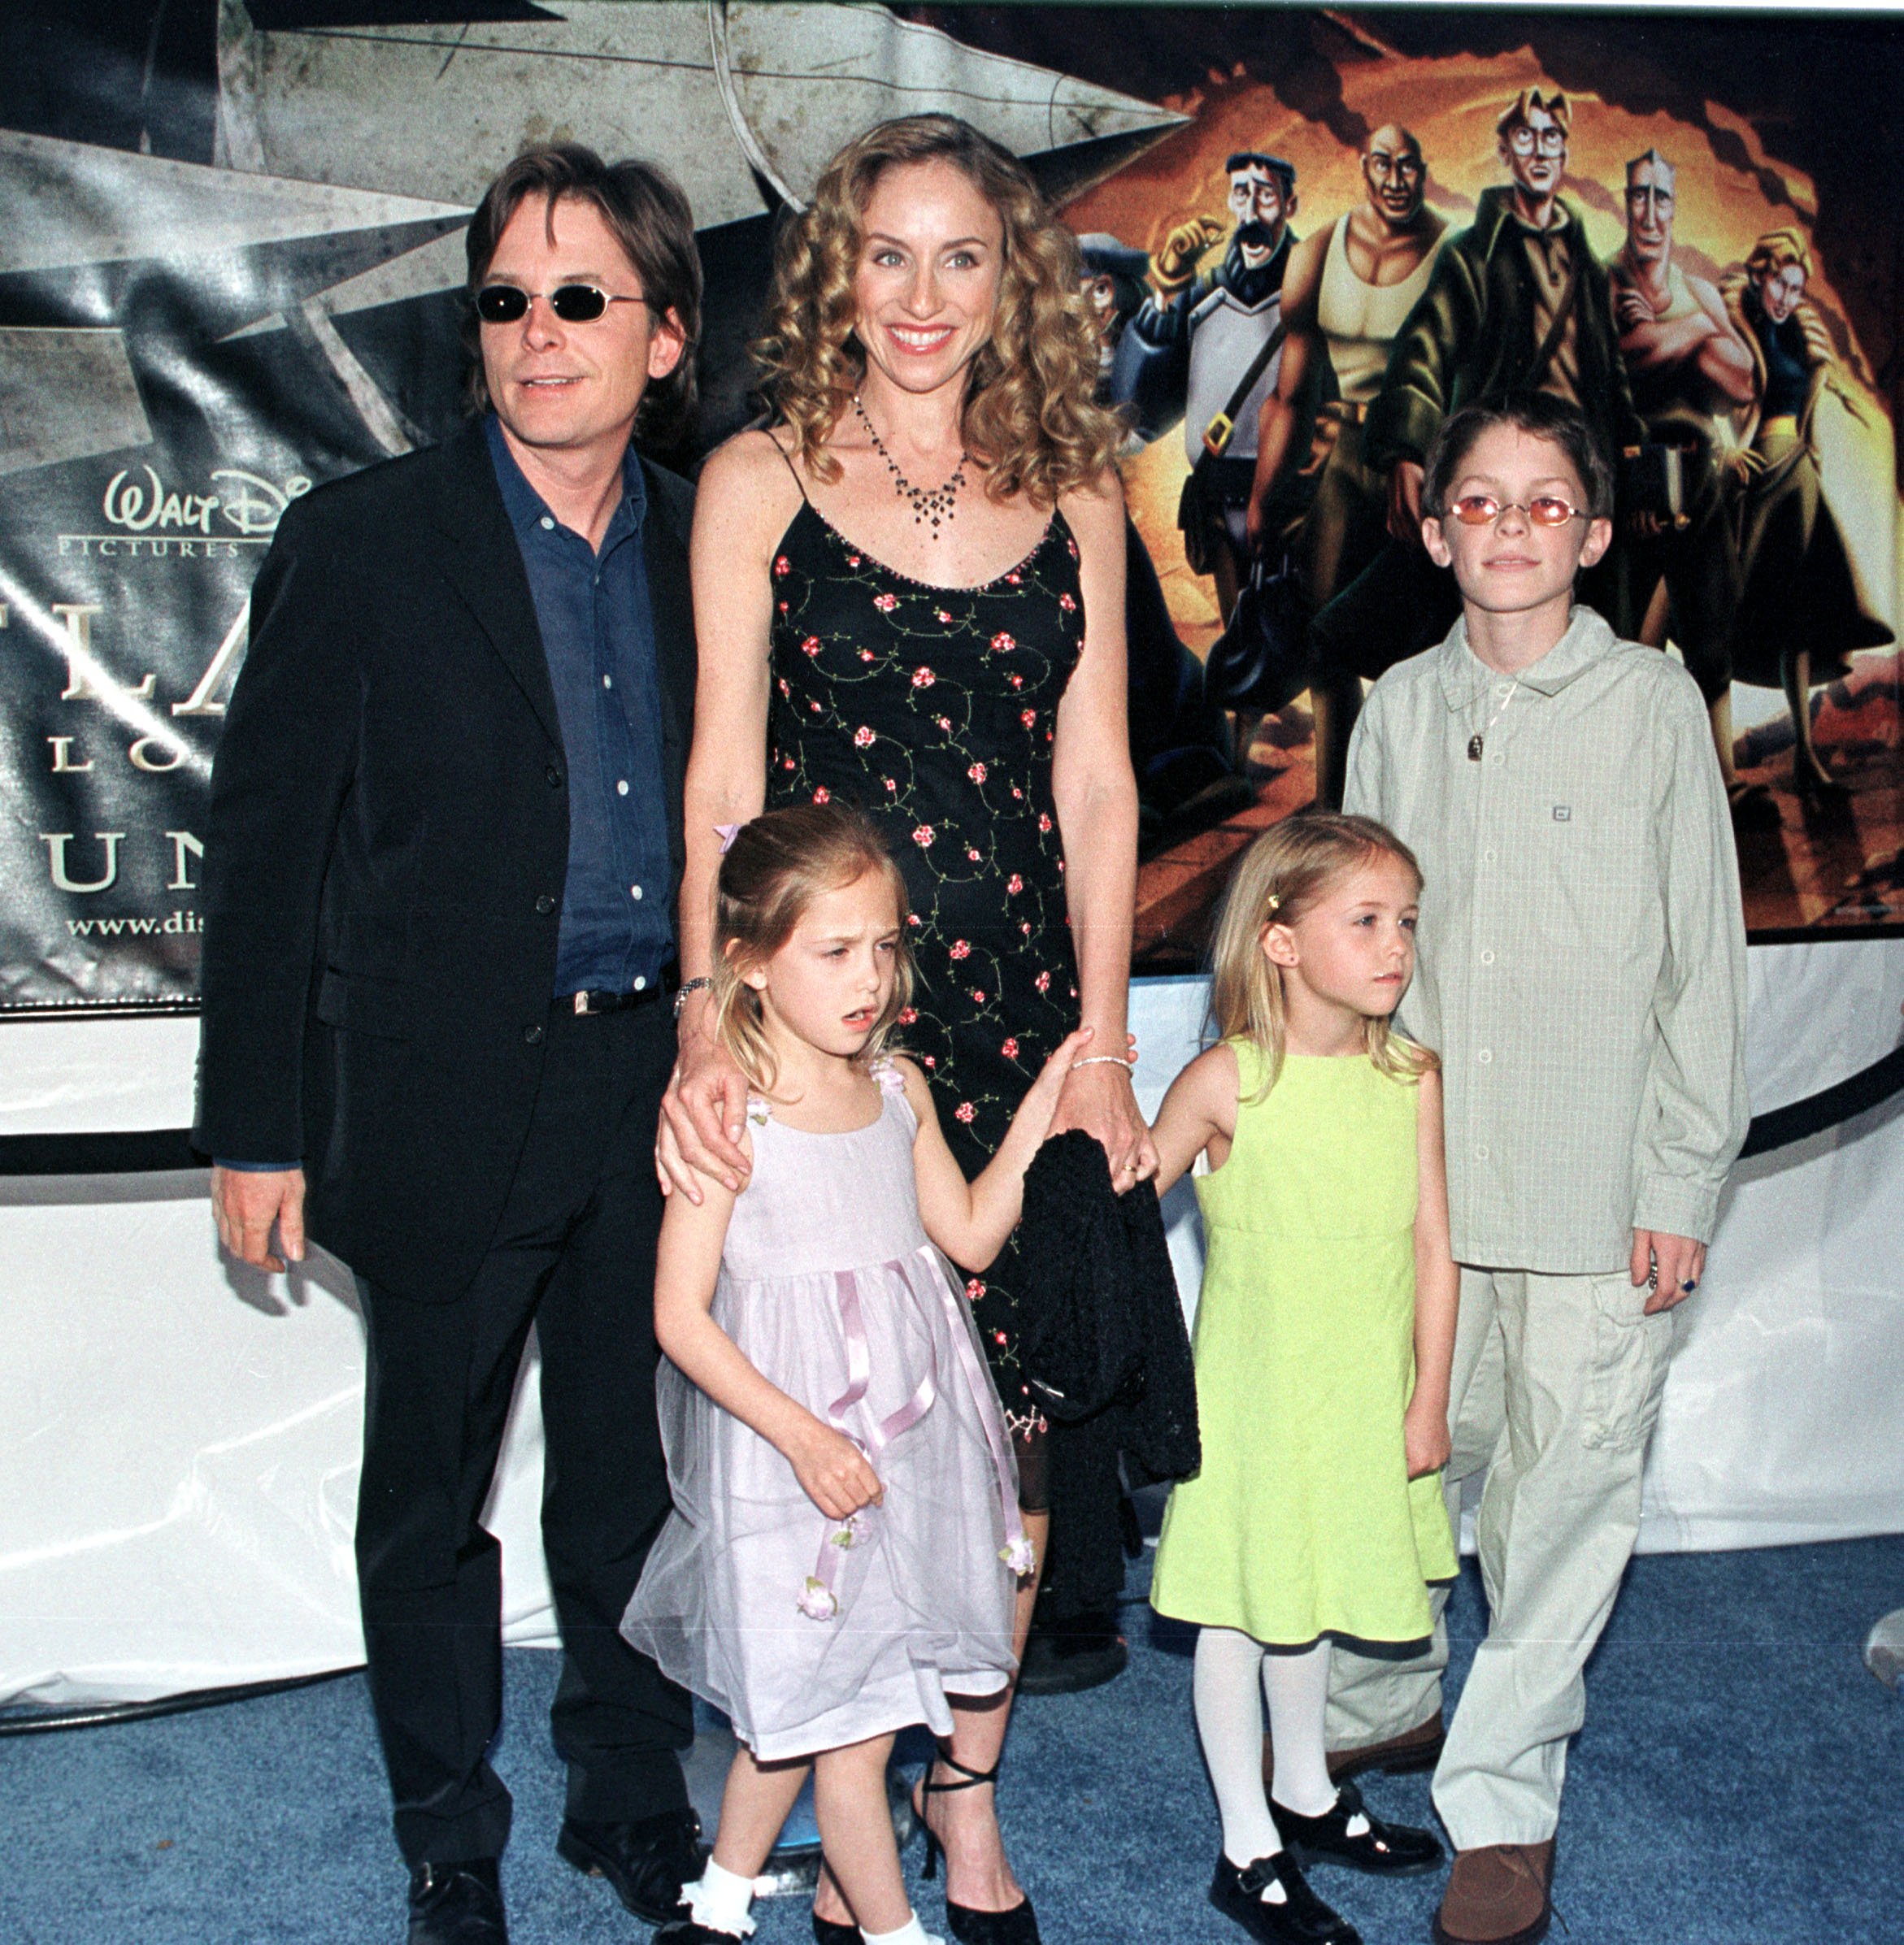 Michael J. Fox y Tracy Pollan con sus hijos en el estreno local de "Atlantis: The Lost Empire" de Walt Disney Pictures, el 6 de junio de 2001. | Foto: Getty Images